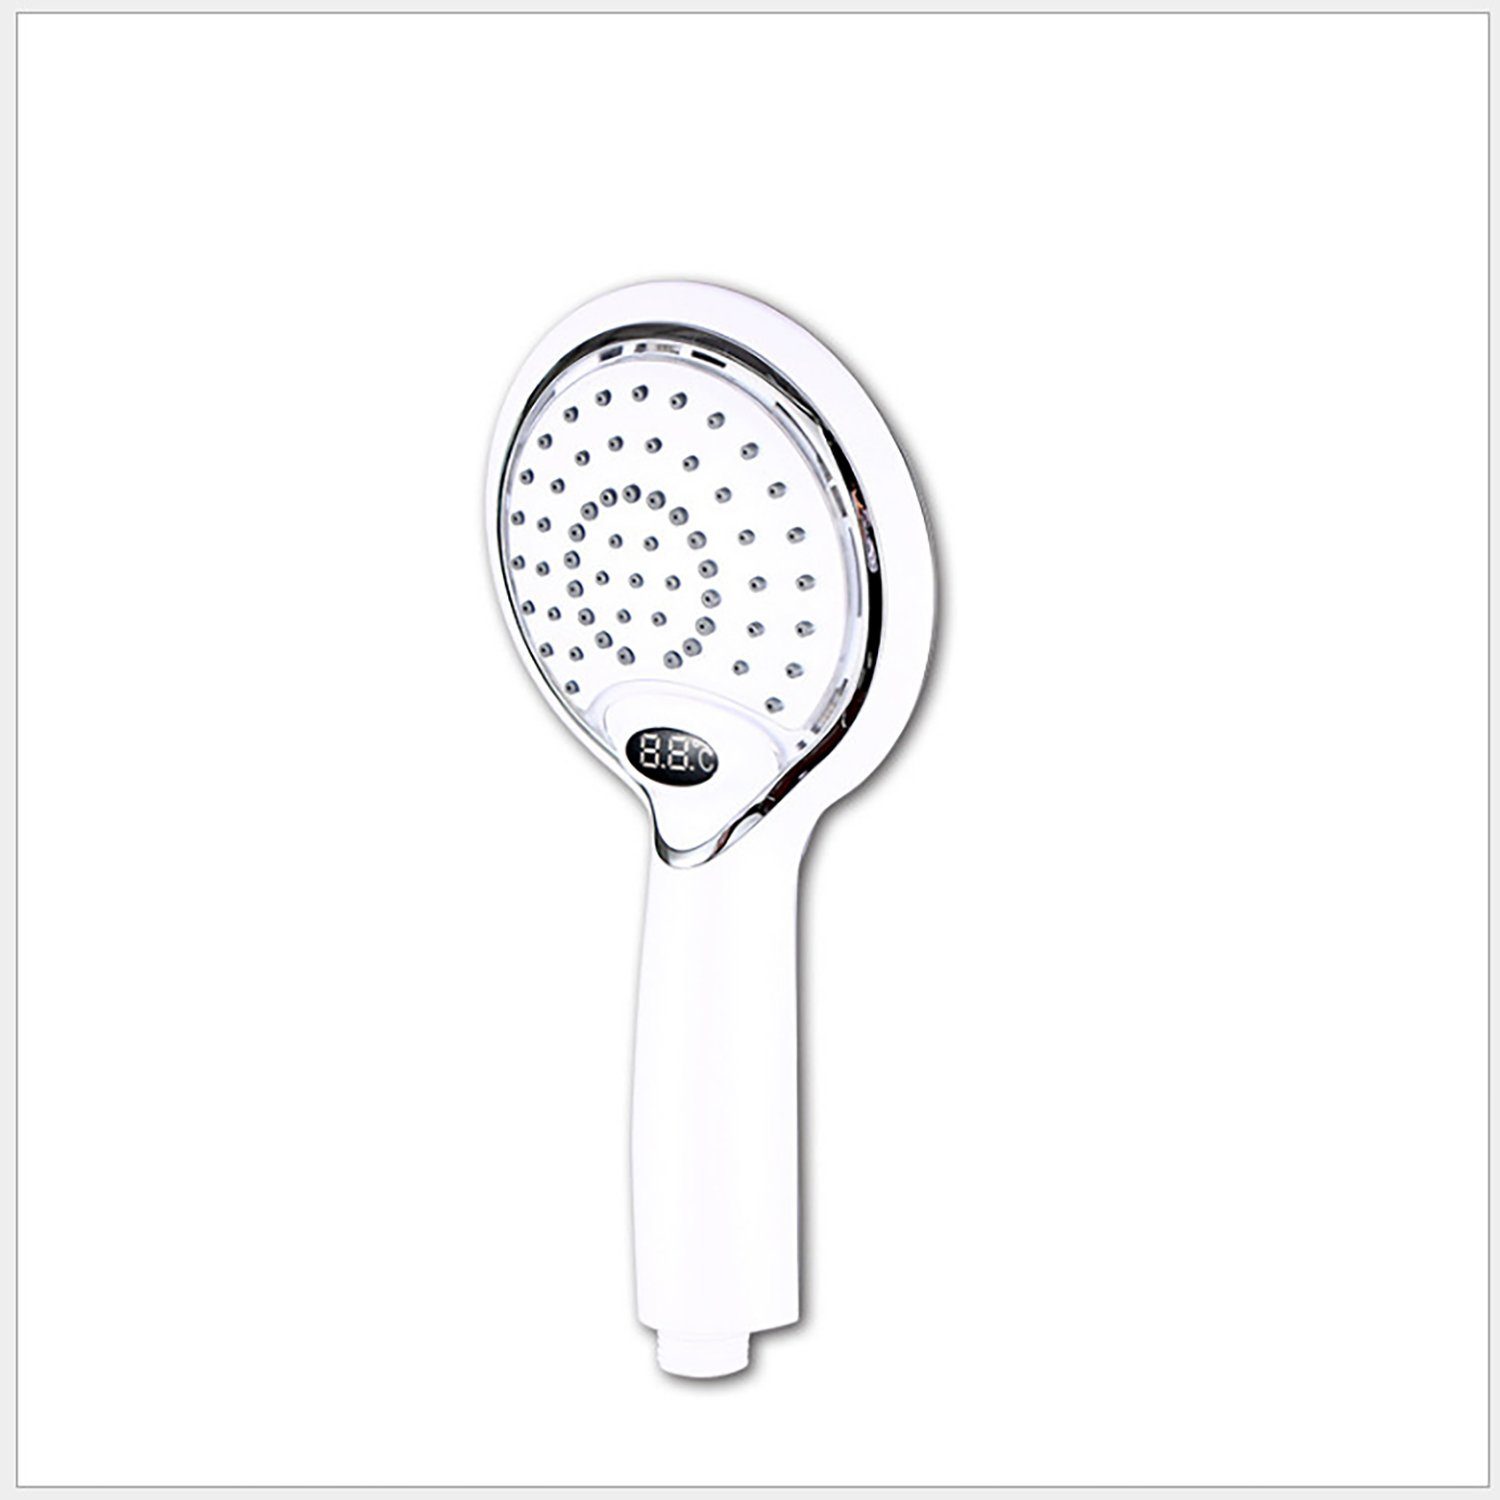 yozhiqu Regenduschkopf Duschkopf mit LED-Temperaturregelung und Digitalanzeige sowie Booster, LED-Duschkopf-Handgehaltene digitale Temperaturanzeige, Wassersparend